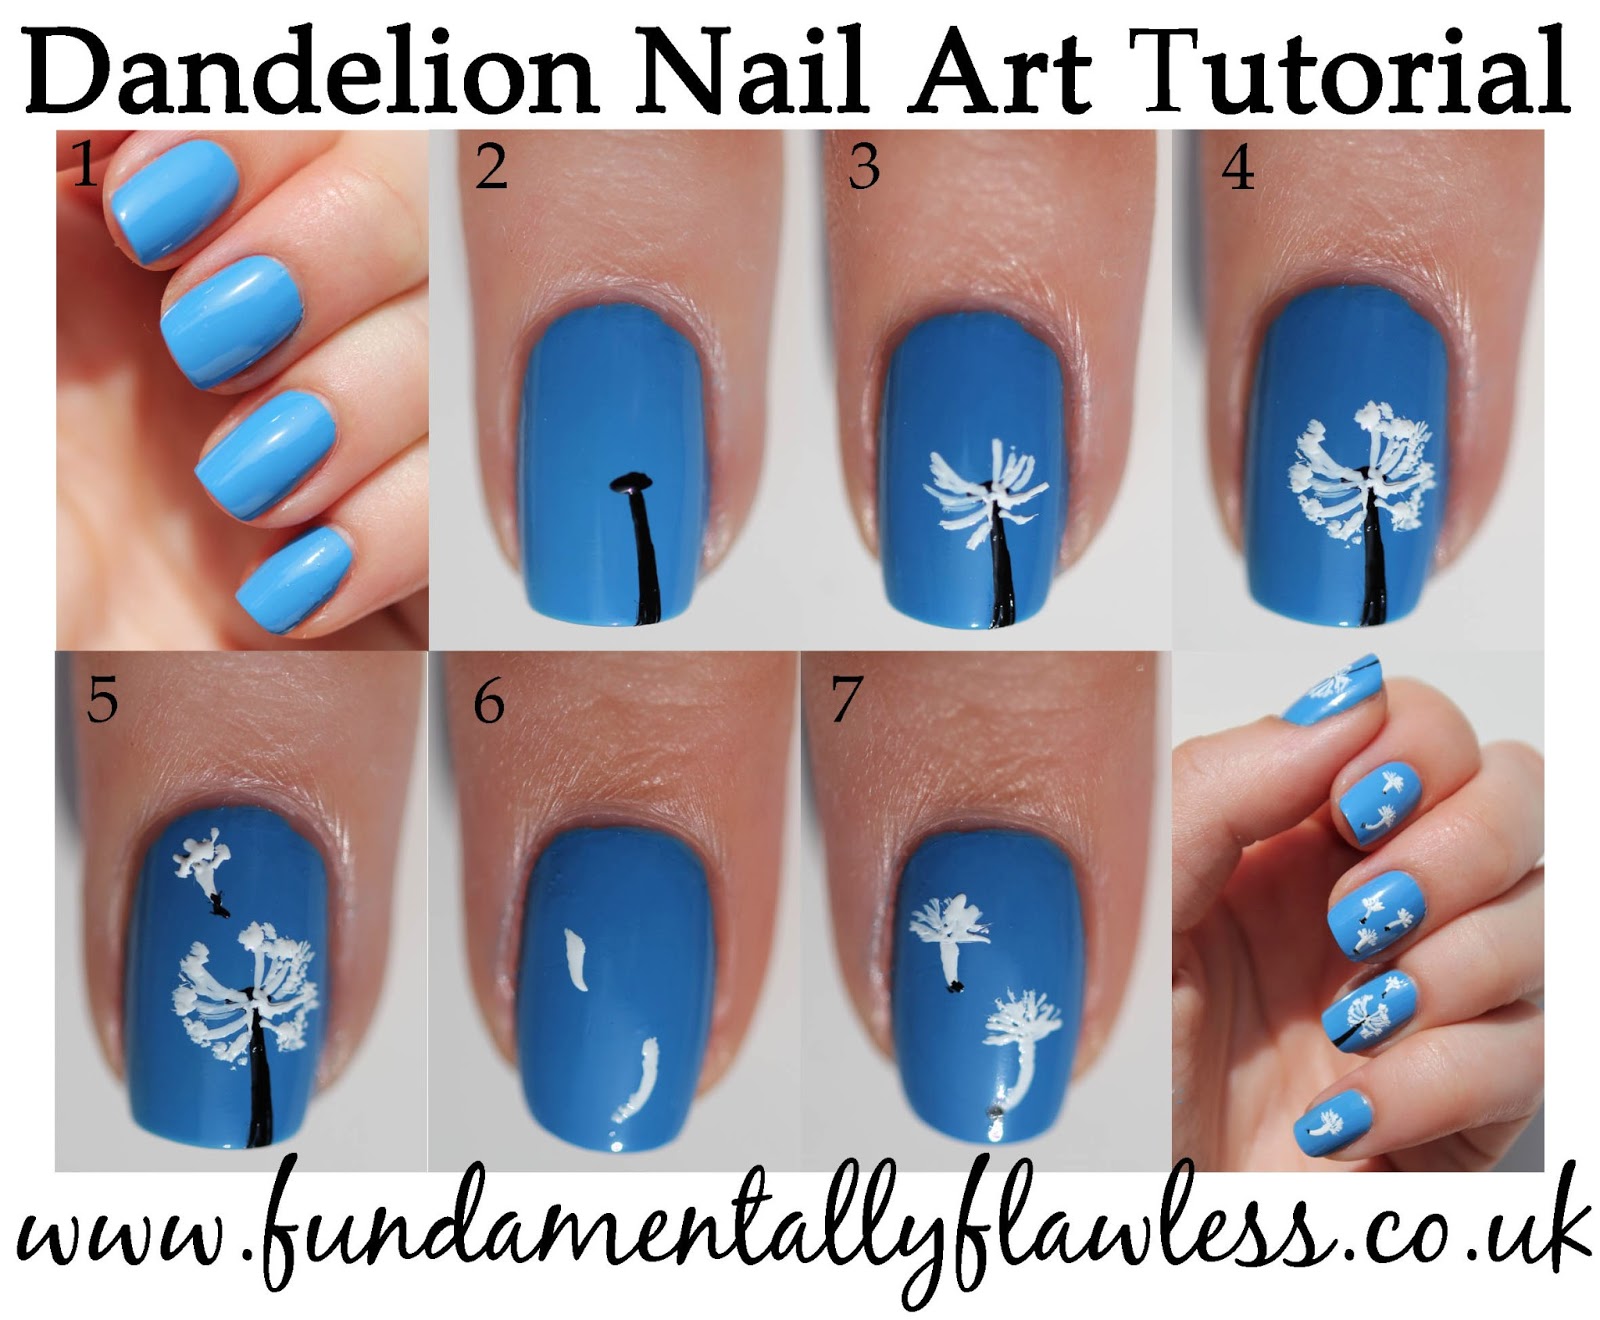 Dandelion Nail Art